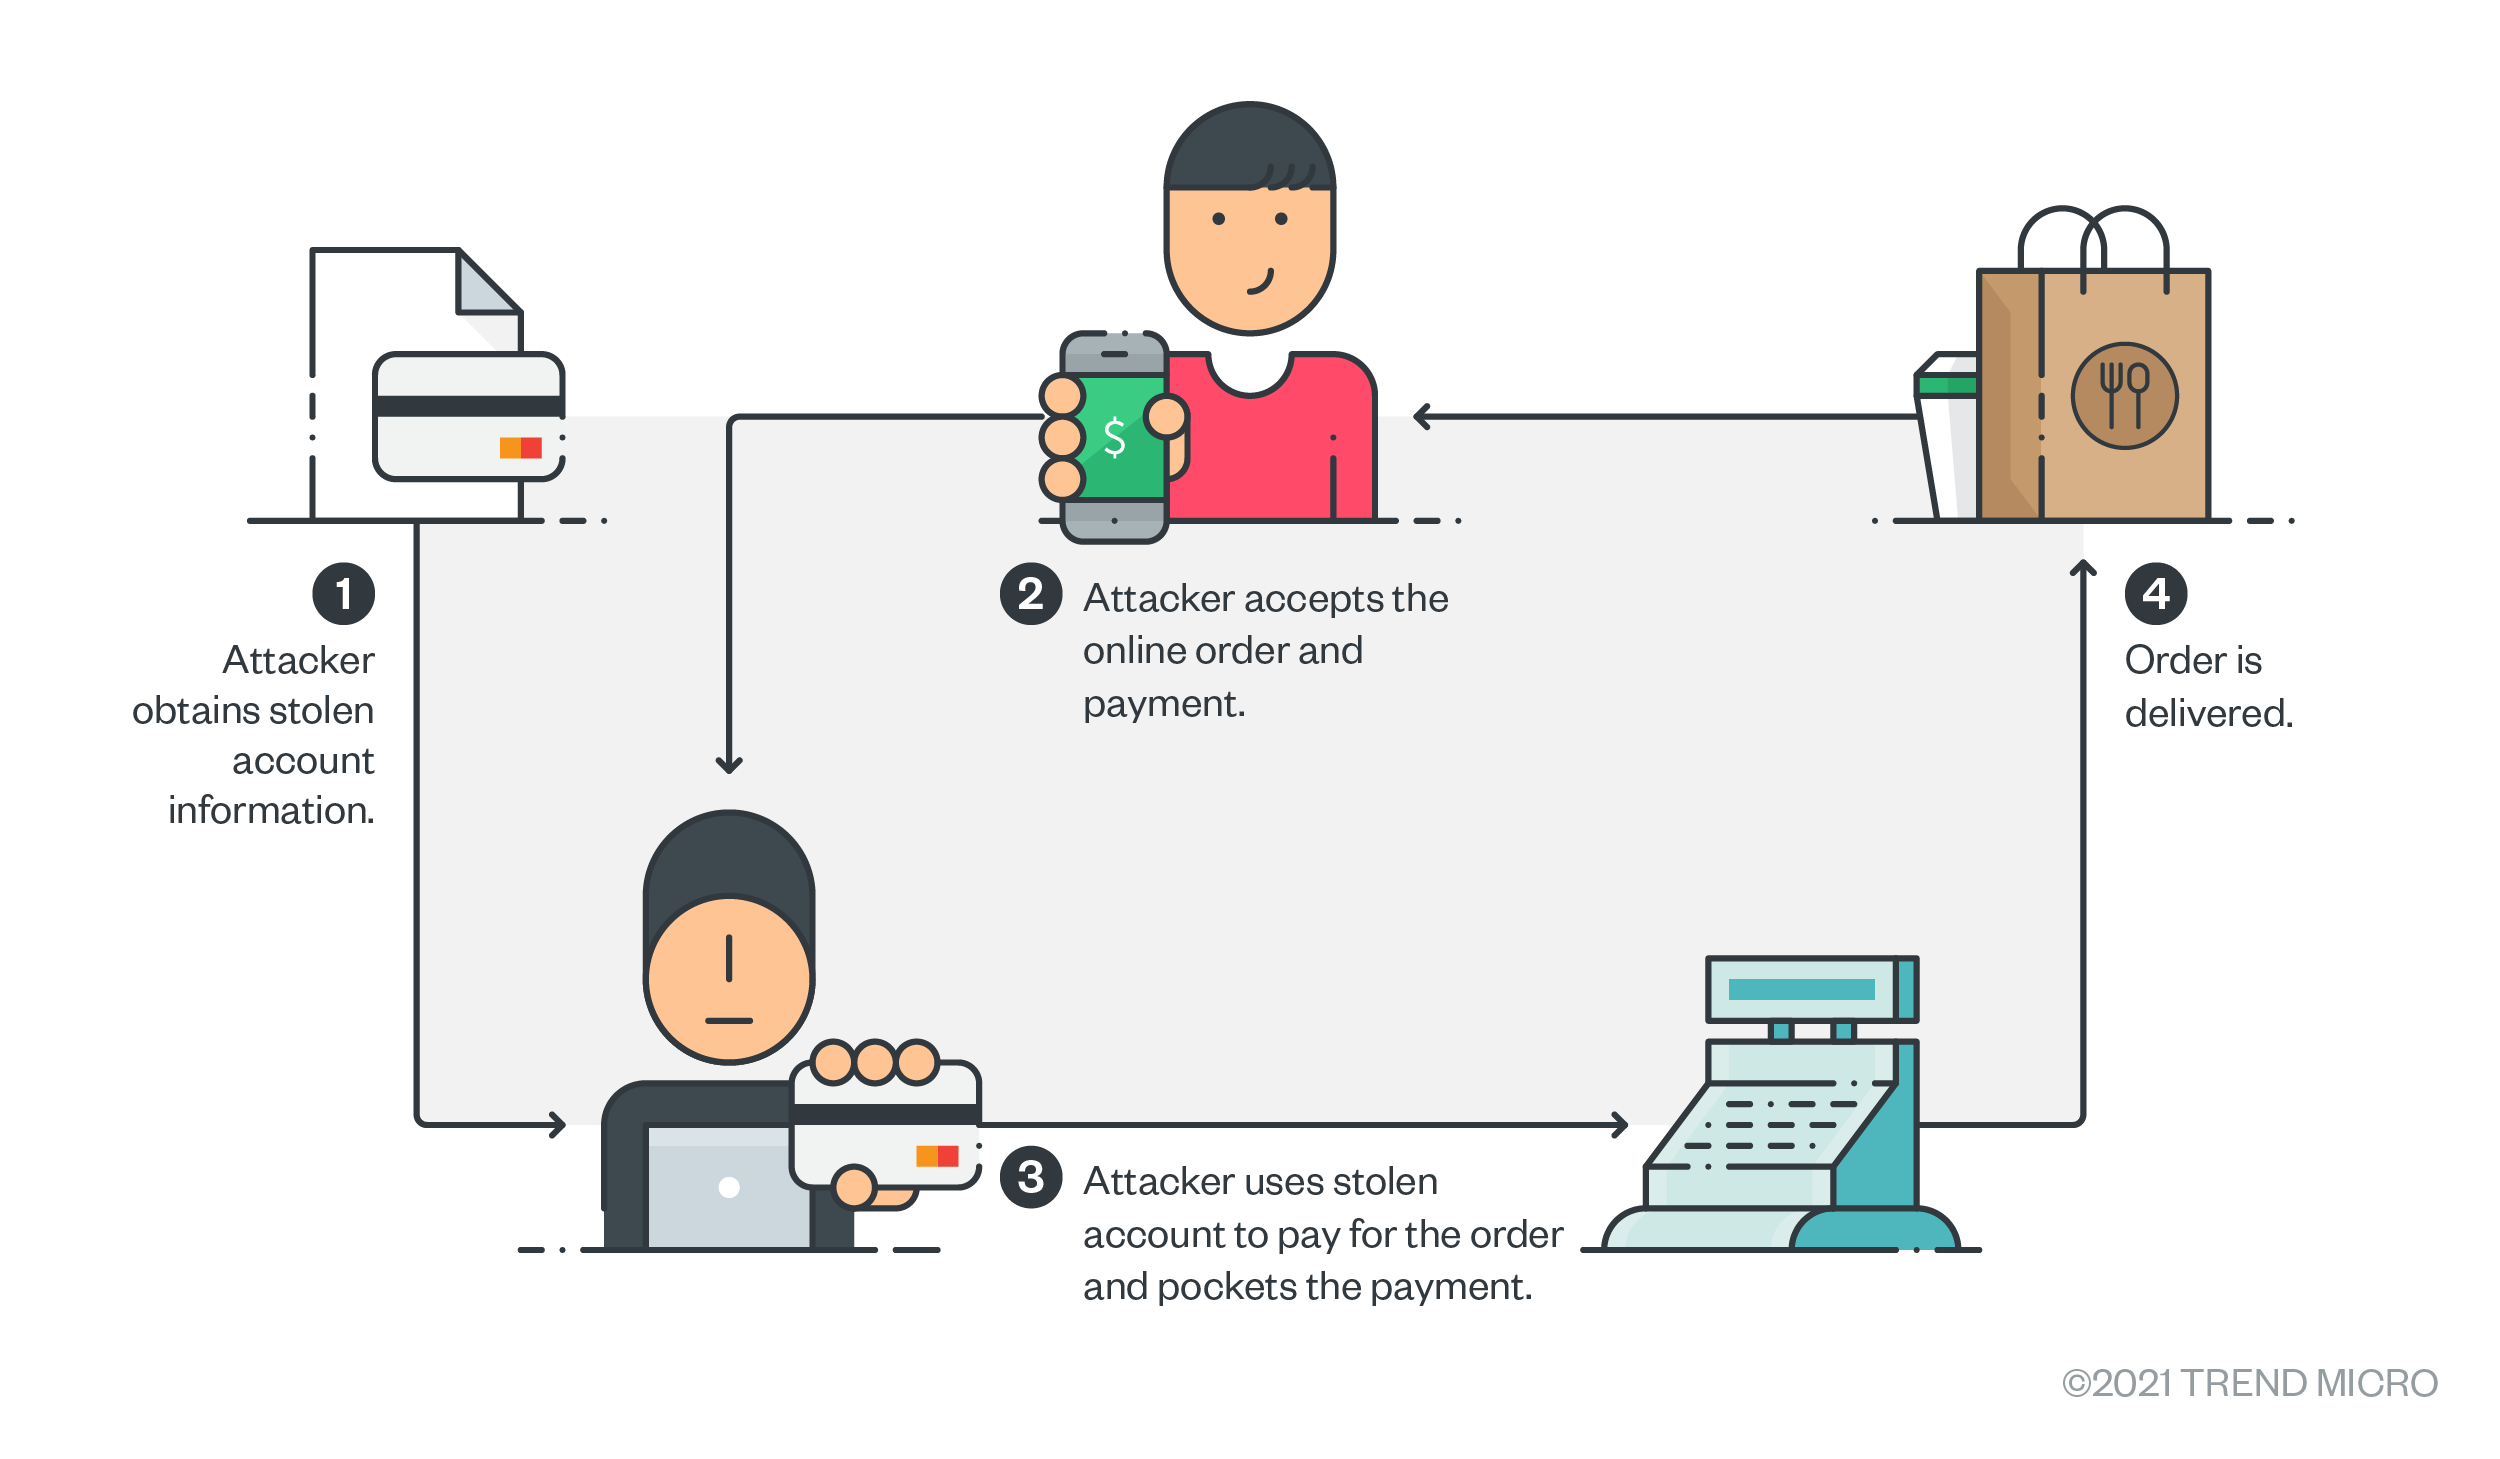 詐騙者用偷來的信用卡資訊支付要交付給客戶的商品貨款